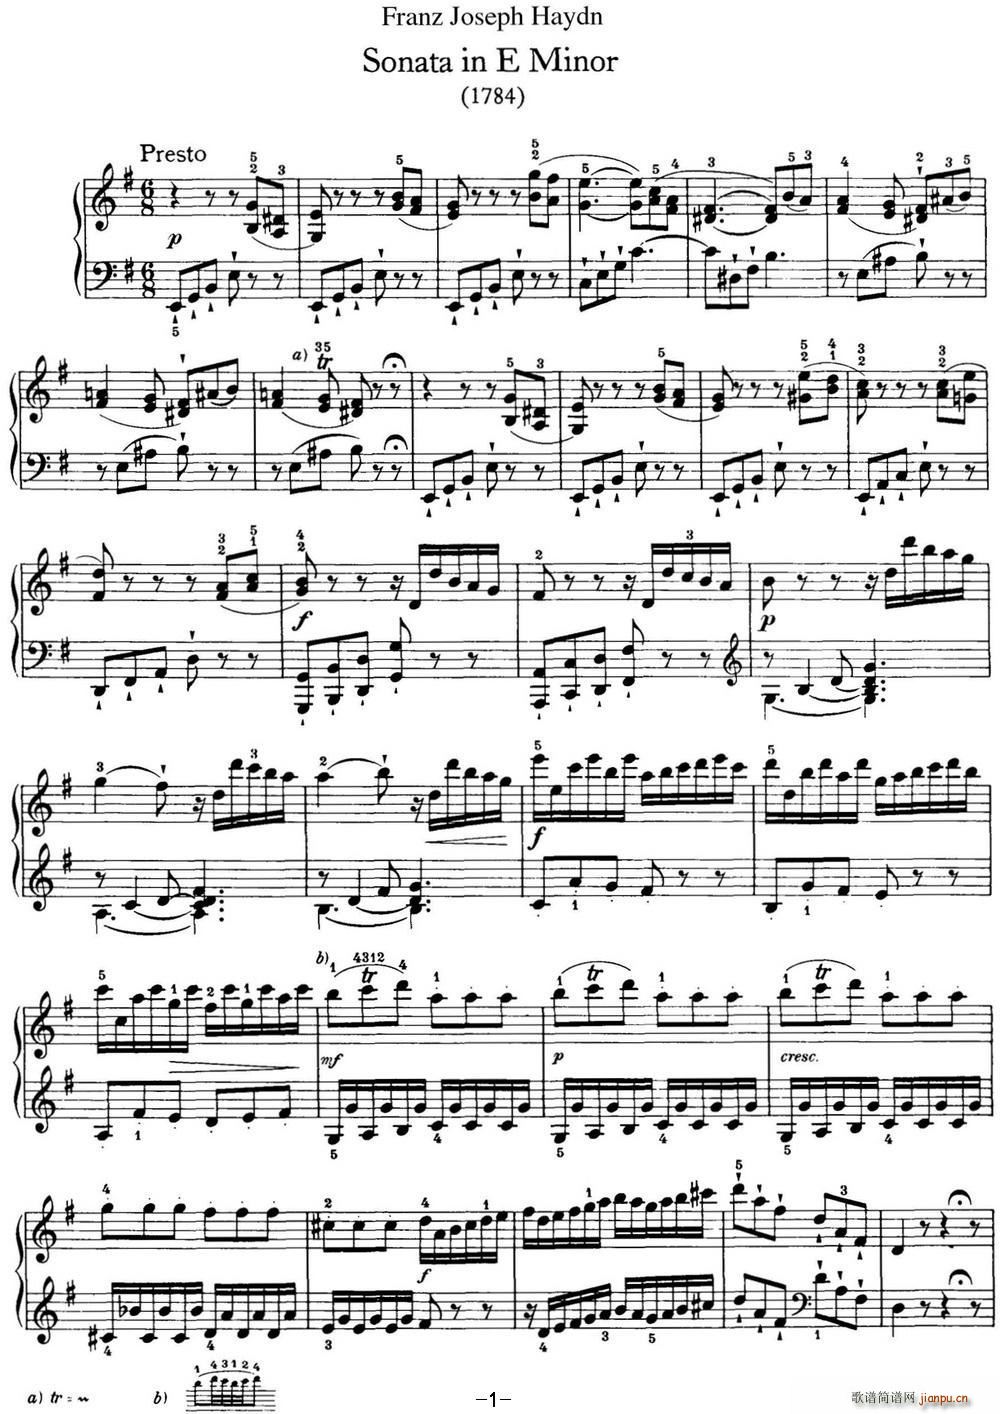   Hob XVI 34 in E minor()1